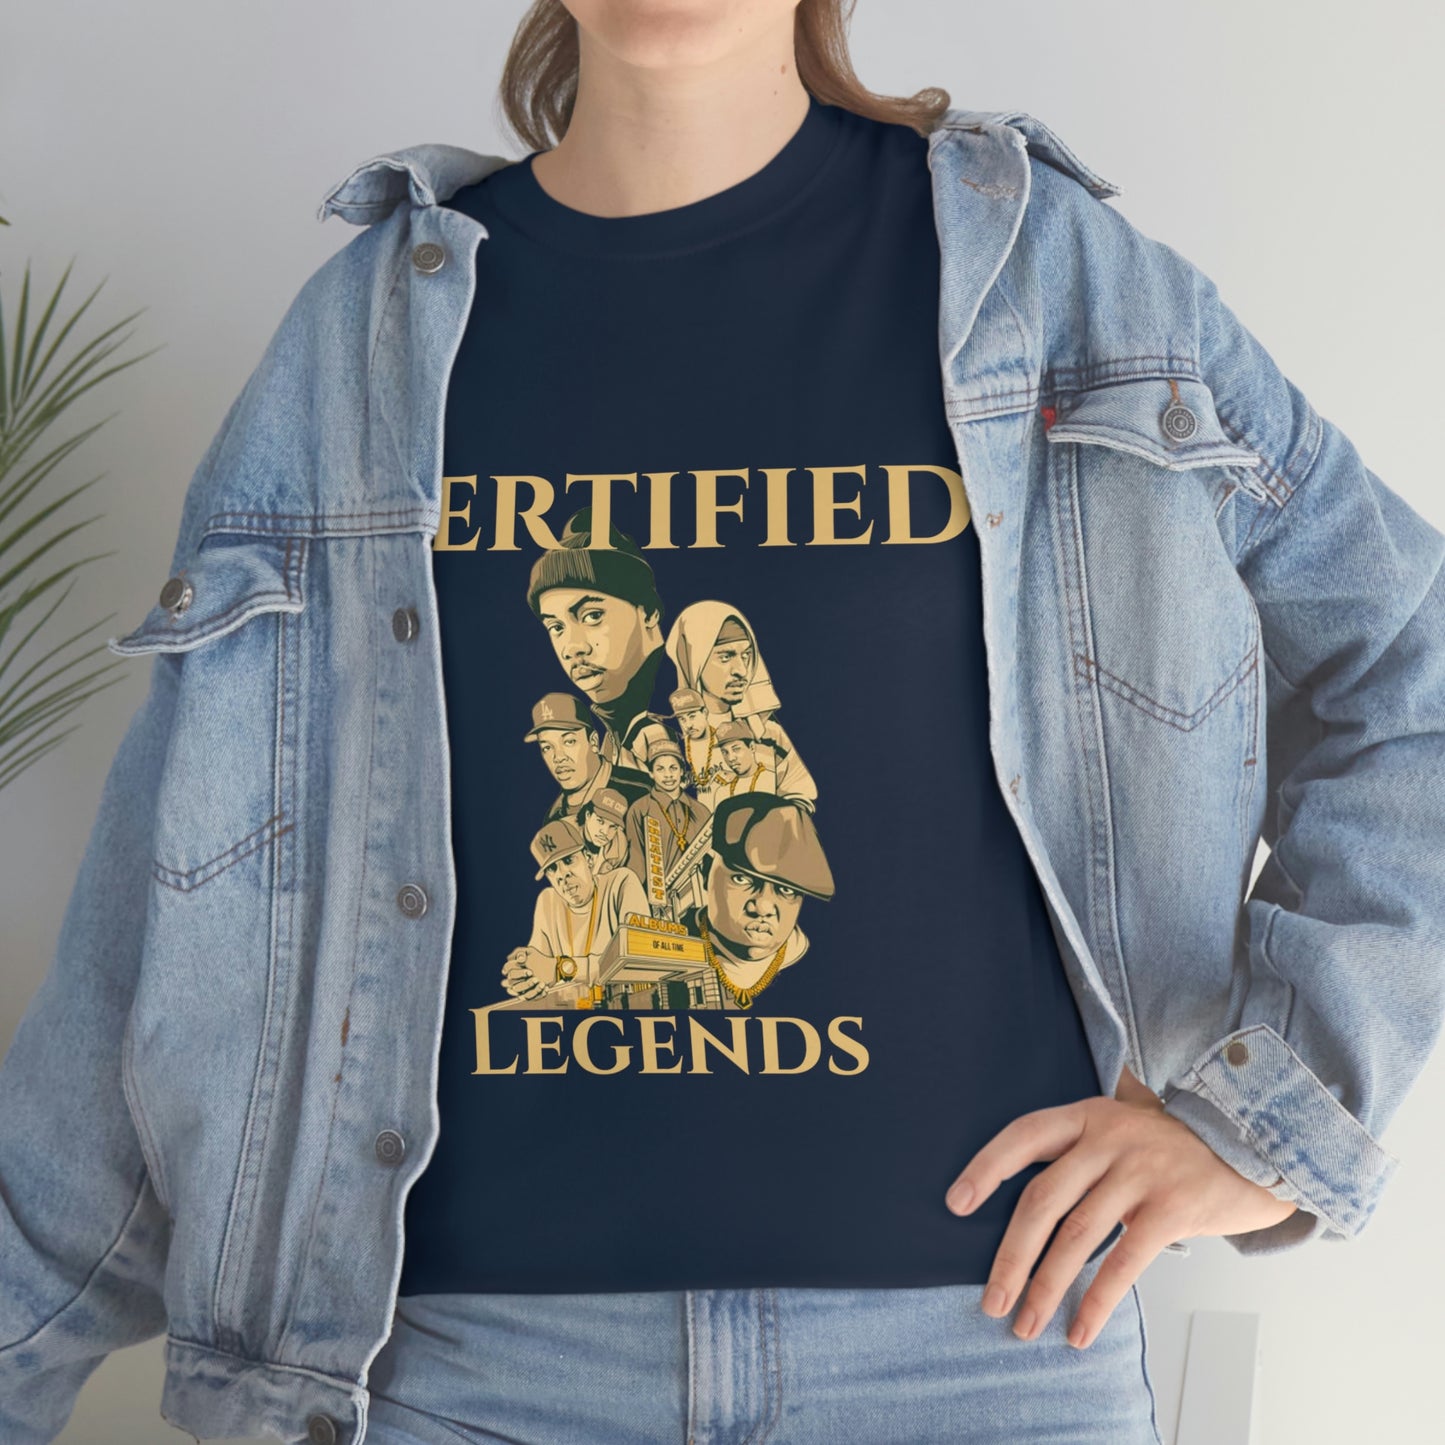 Unisex Certified Legends Tee